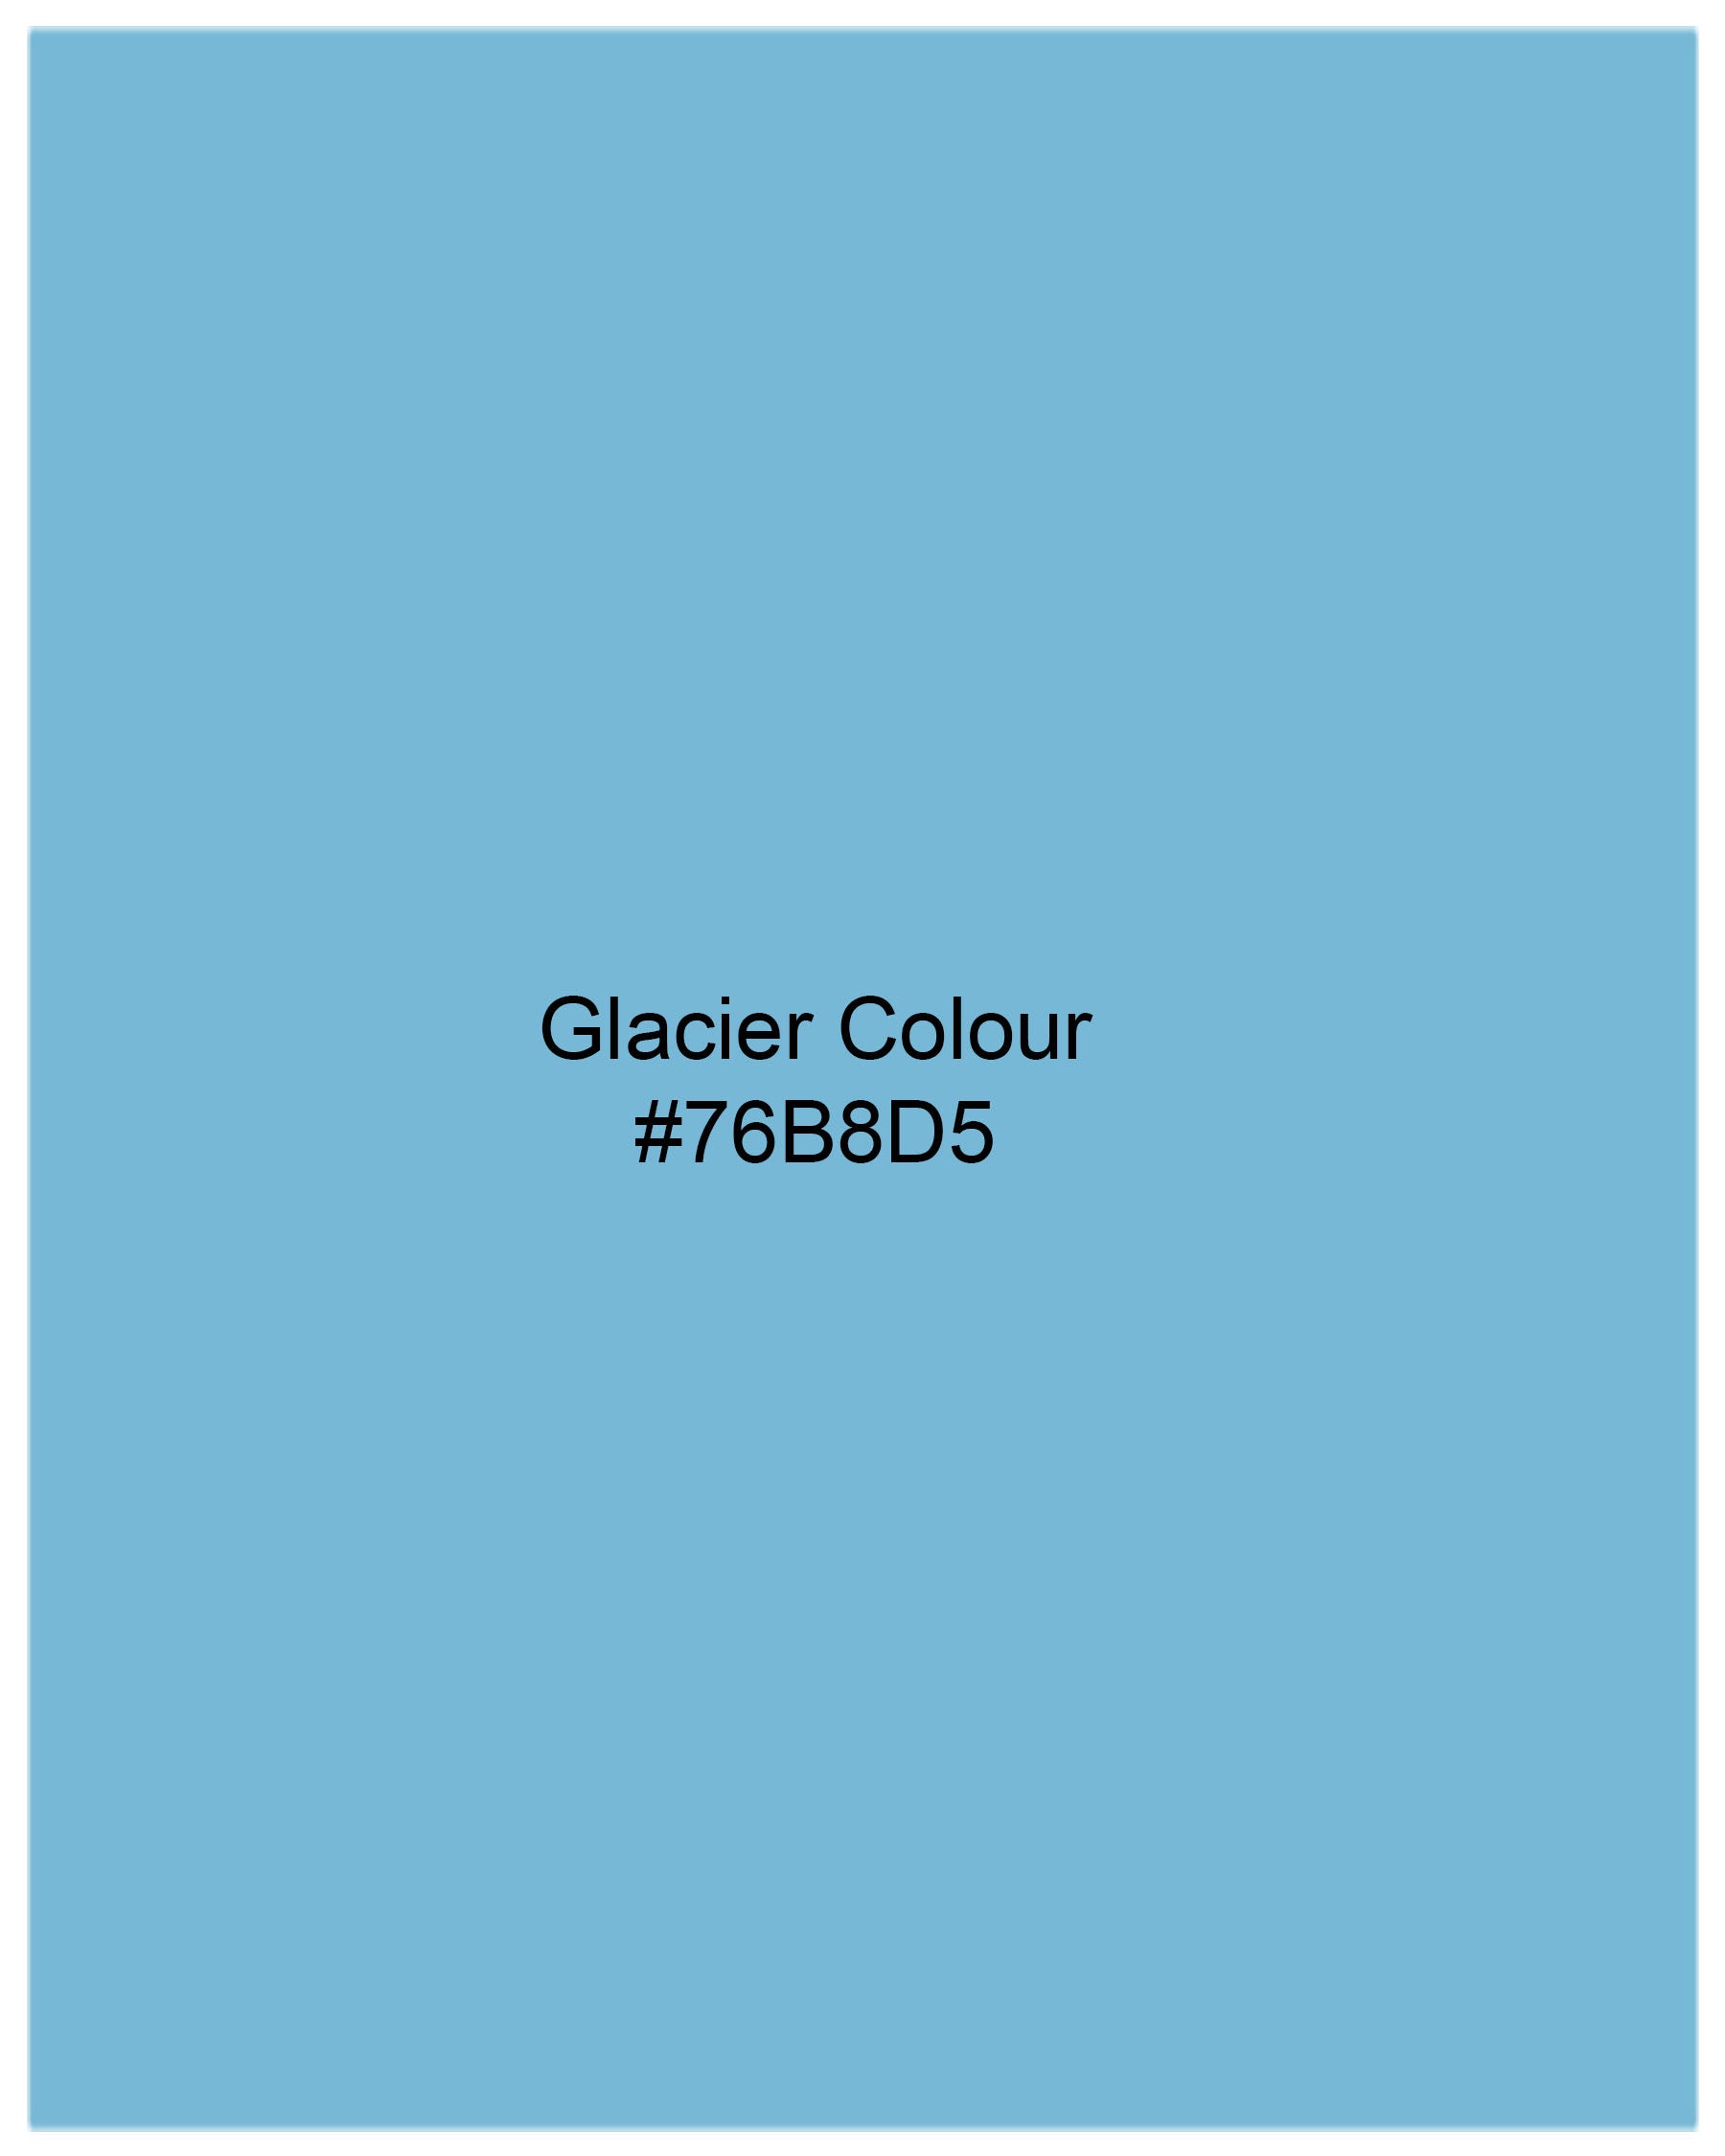 Glacier Blue Royal Oxford Shirt 7734-BD-38, 7734-BD-H-38, 7734-BD-39,7734-BD-H-39, 7734-BD-40, 7734-BD-H-40, 7734-BD-42, 7734-BD-H-42, 7734-BD-44, 7734-BD-H-44, 7734-BD-46, 7734-BD-H-46, 7734-BD-48, 7734-BD-H-48, 7734-BD-50, 7734-BD-H-50, 7734-BD-52, 7734-BD-H-52